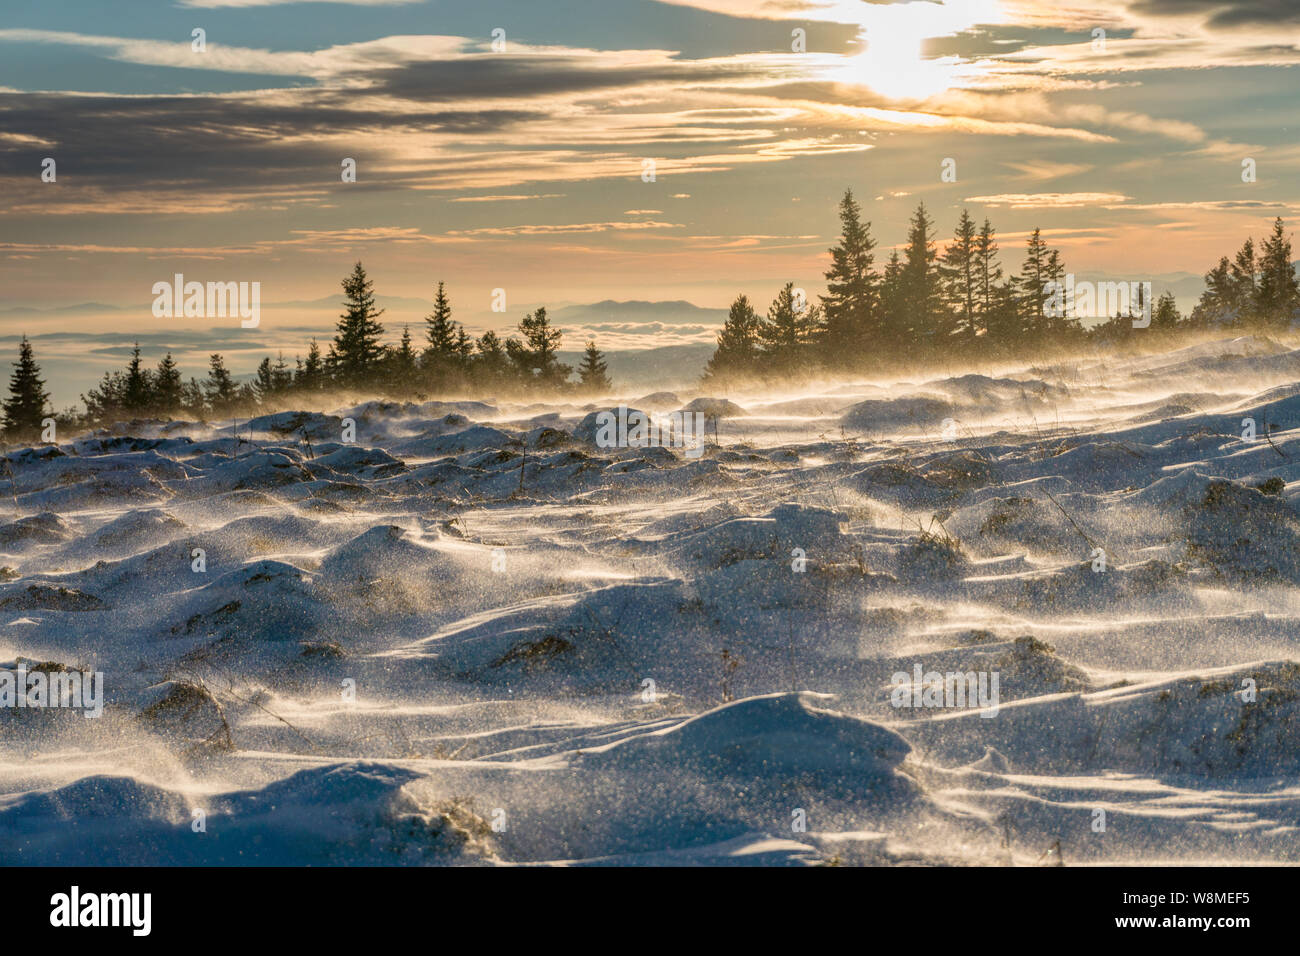 Fantastico paesaggio invernale - incredibile paesaggio congelato in cima a una montagna in Bulgaria - colori vivaci, incontaminata natura pittoresca - suggestiva composizione Foto Stock